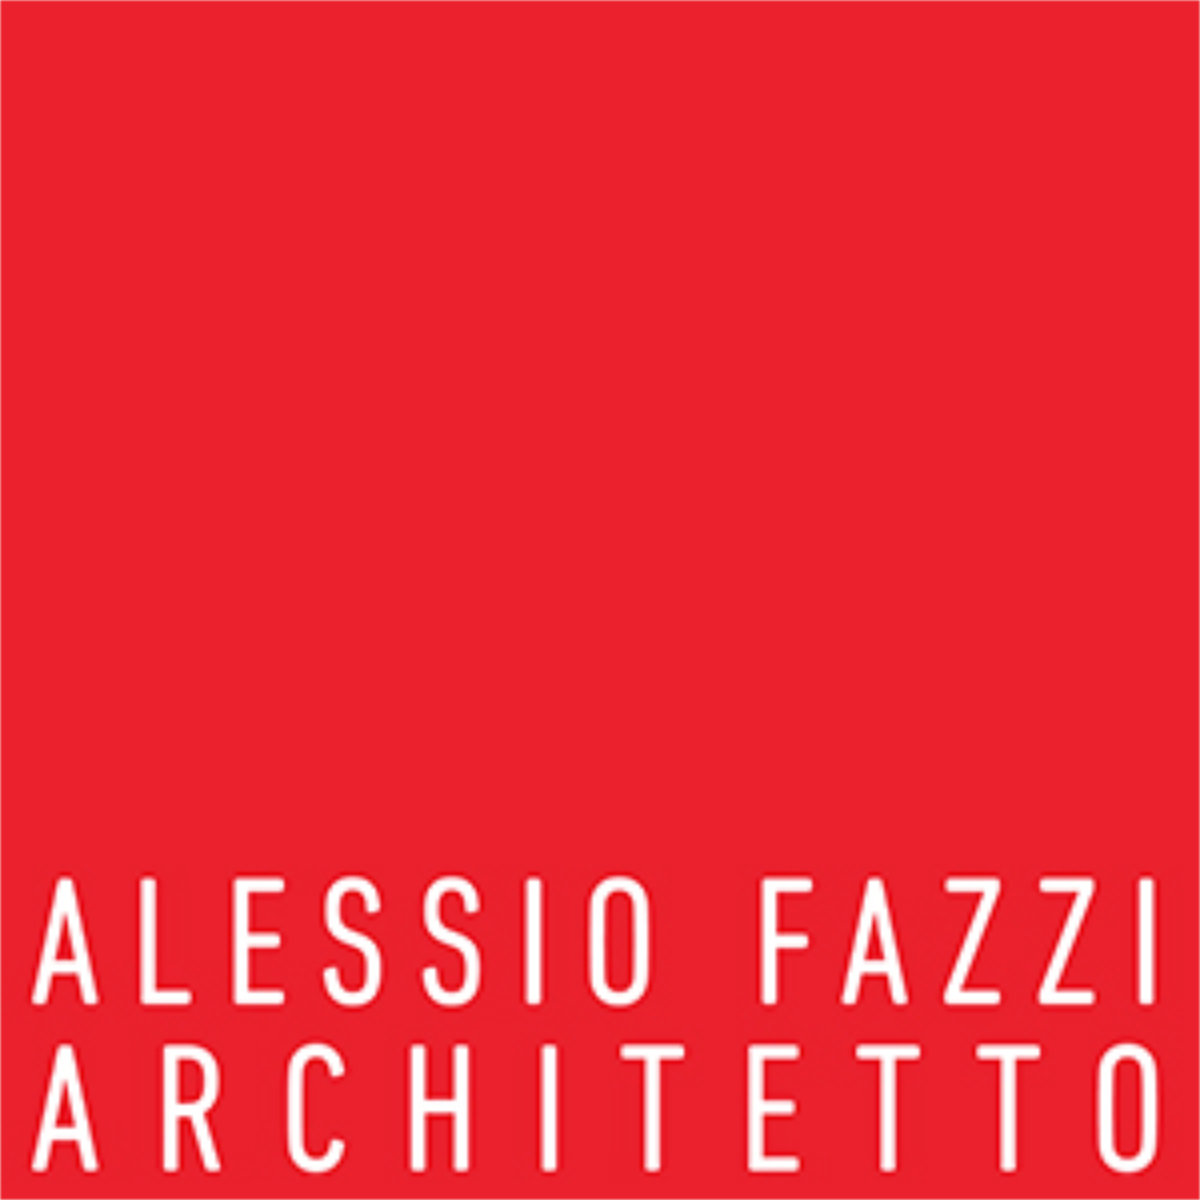 ALESSIO FAZZI ARCHITETTO